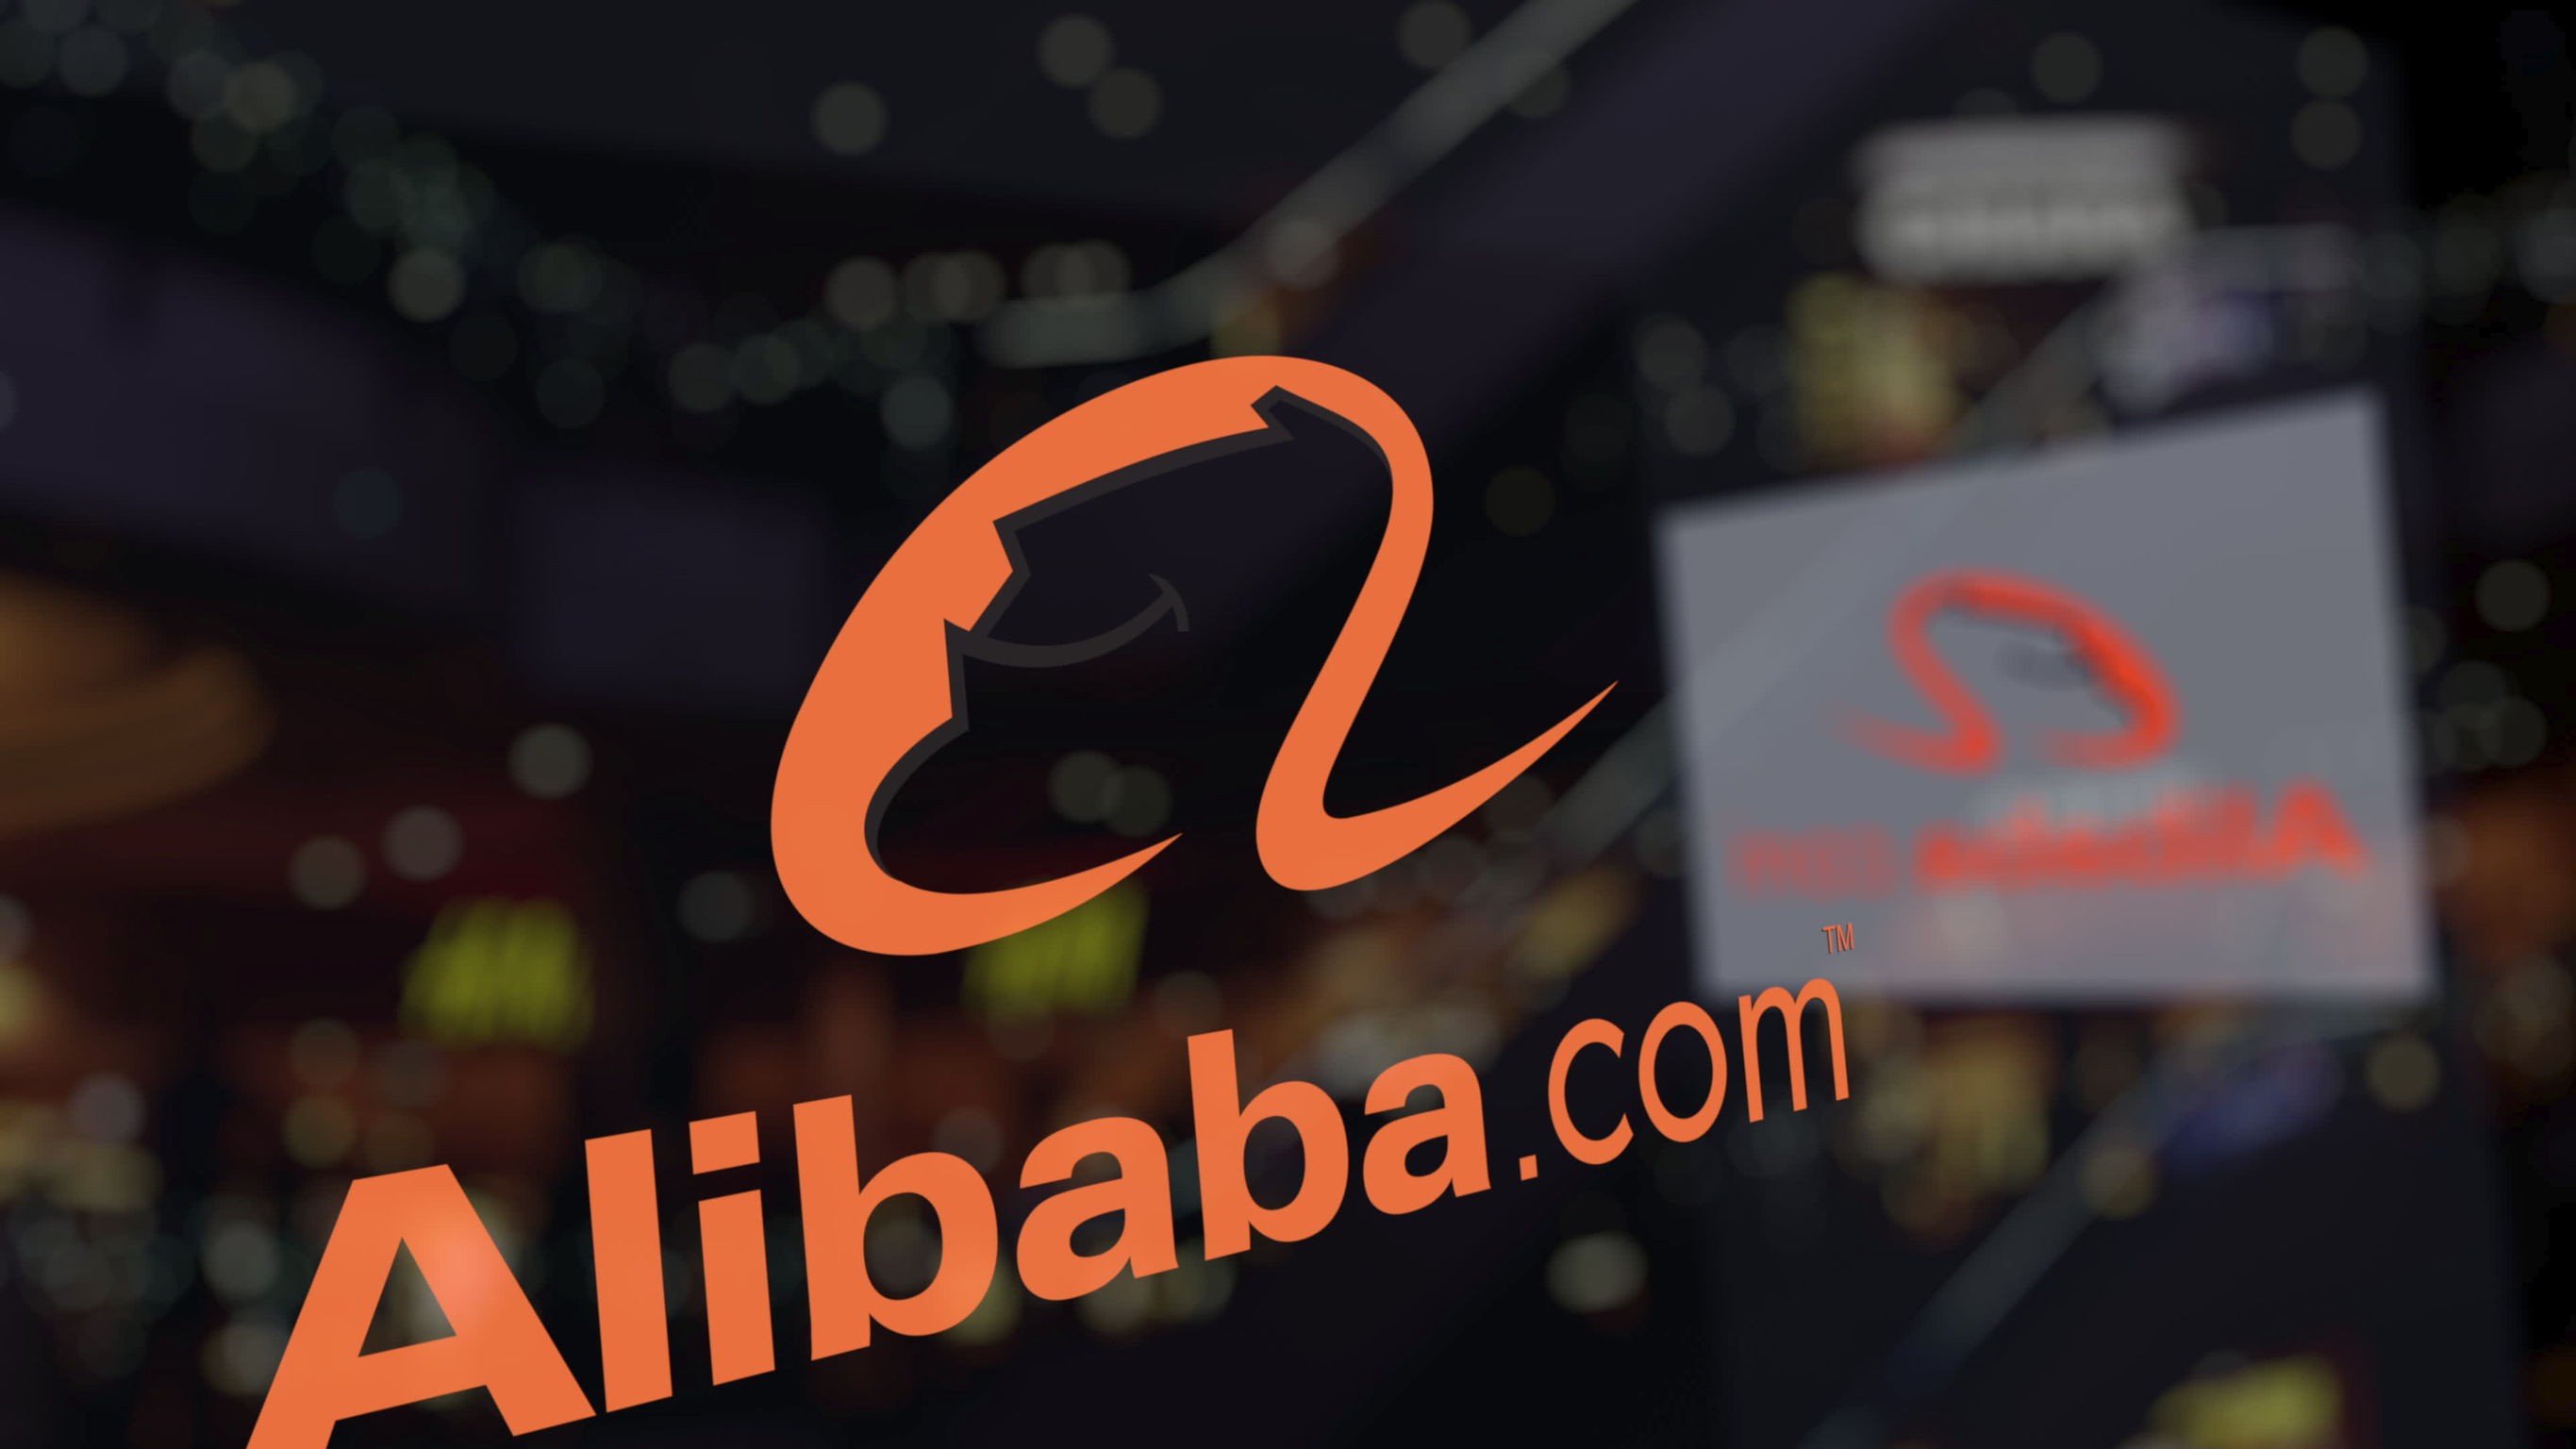 
Gã khổng lồ thương mại điện tử này sẽ cung cấp các gói thôi việc cho những người bị ảnh hưởng bởi đợt sa thải. Alibaba cũng đã bắt đầu thông báo cho nhân viên về việc sa thải, đang giúp họ chuyển sang các vị trí khác trong nội bộ nếu như họ muốn.
